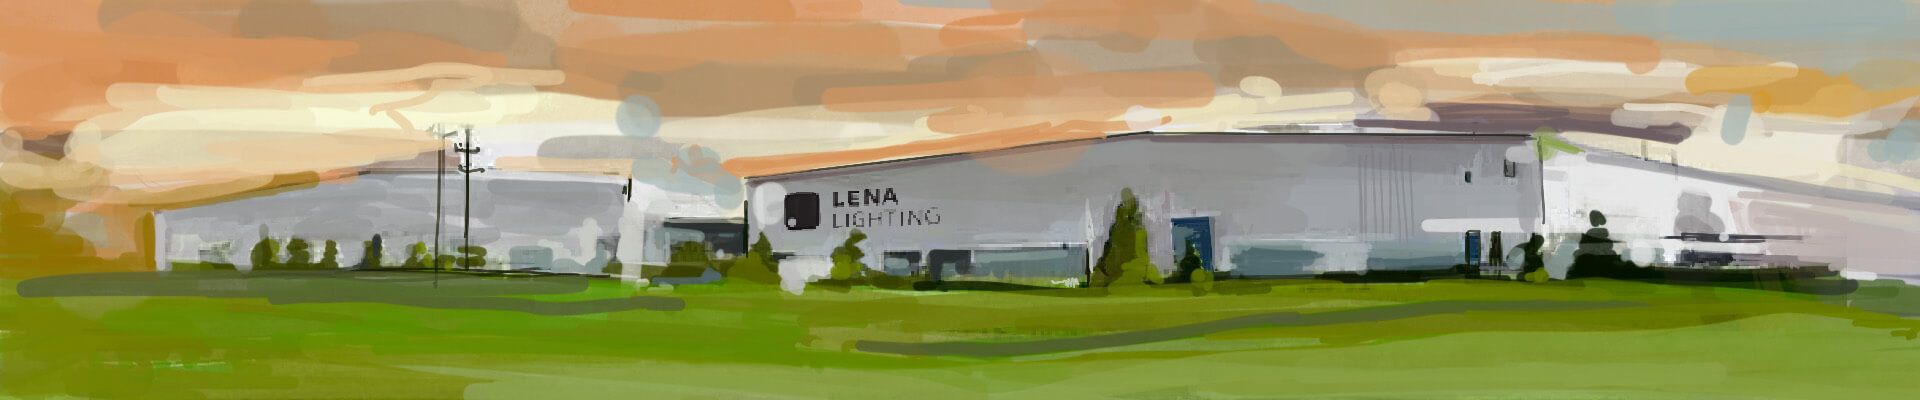 Lena Lighting- usine et entrepôt